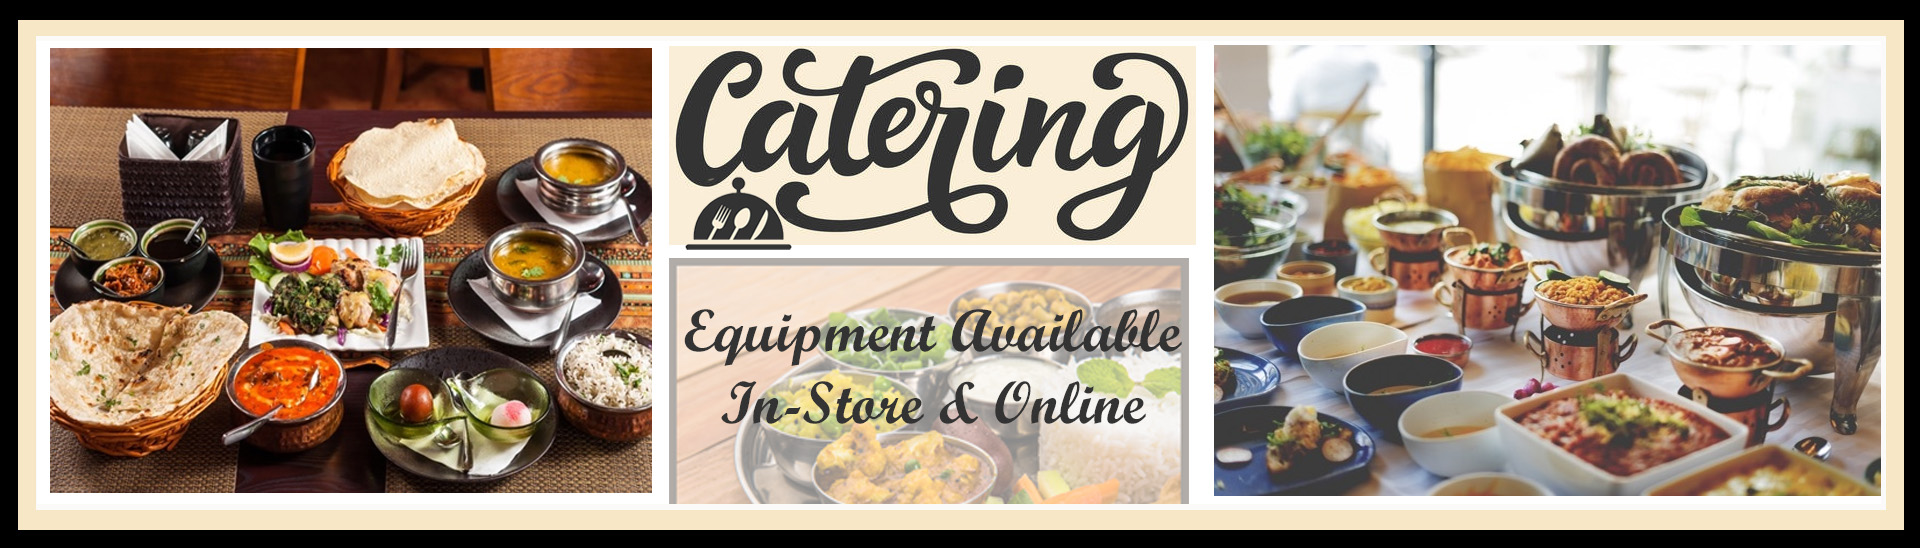 Catering Equipment 